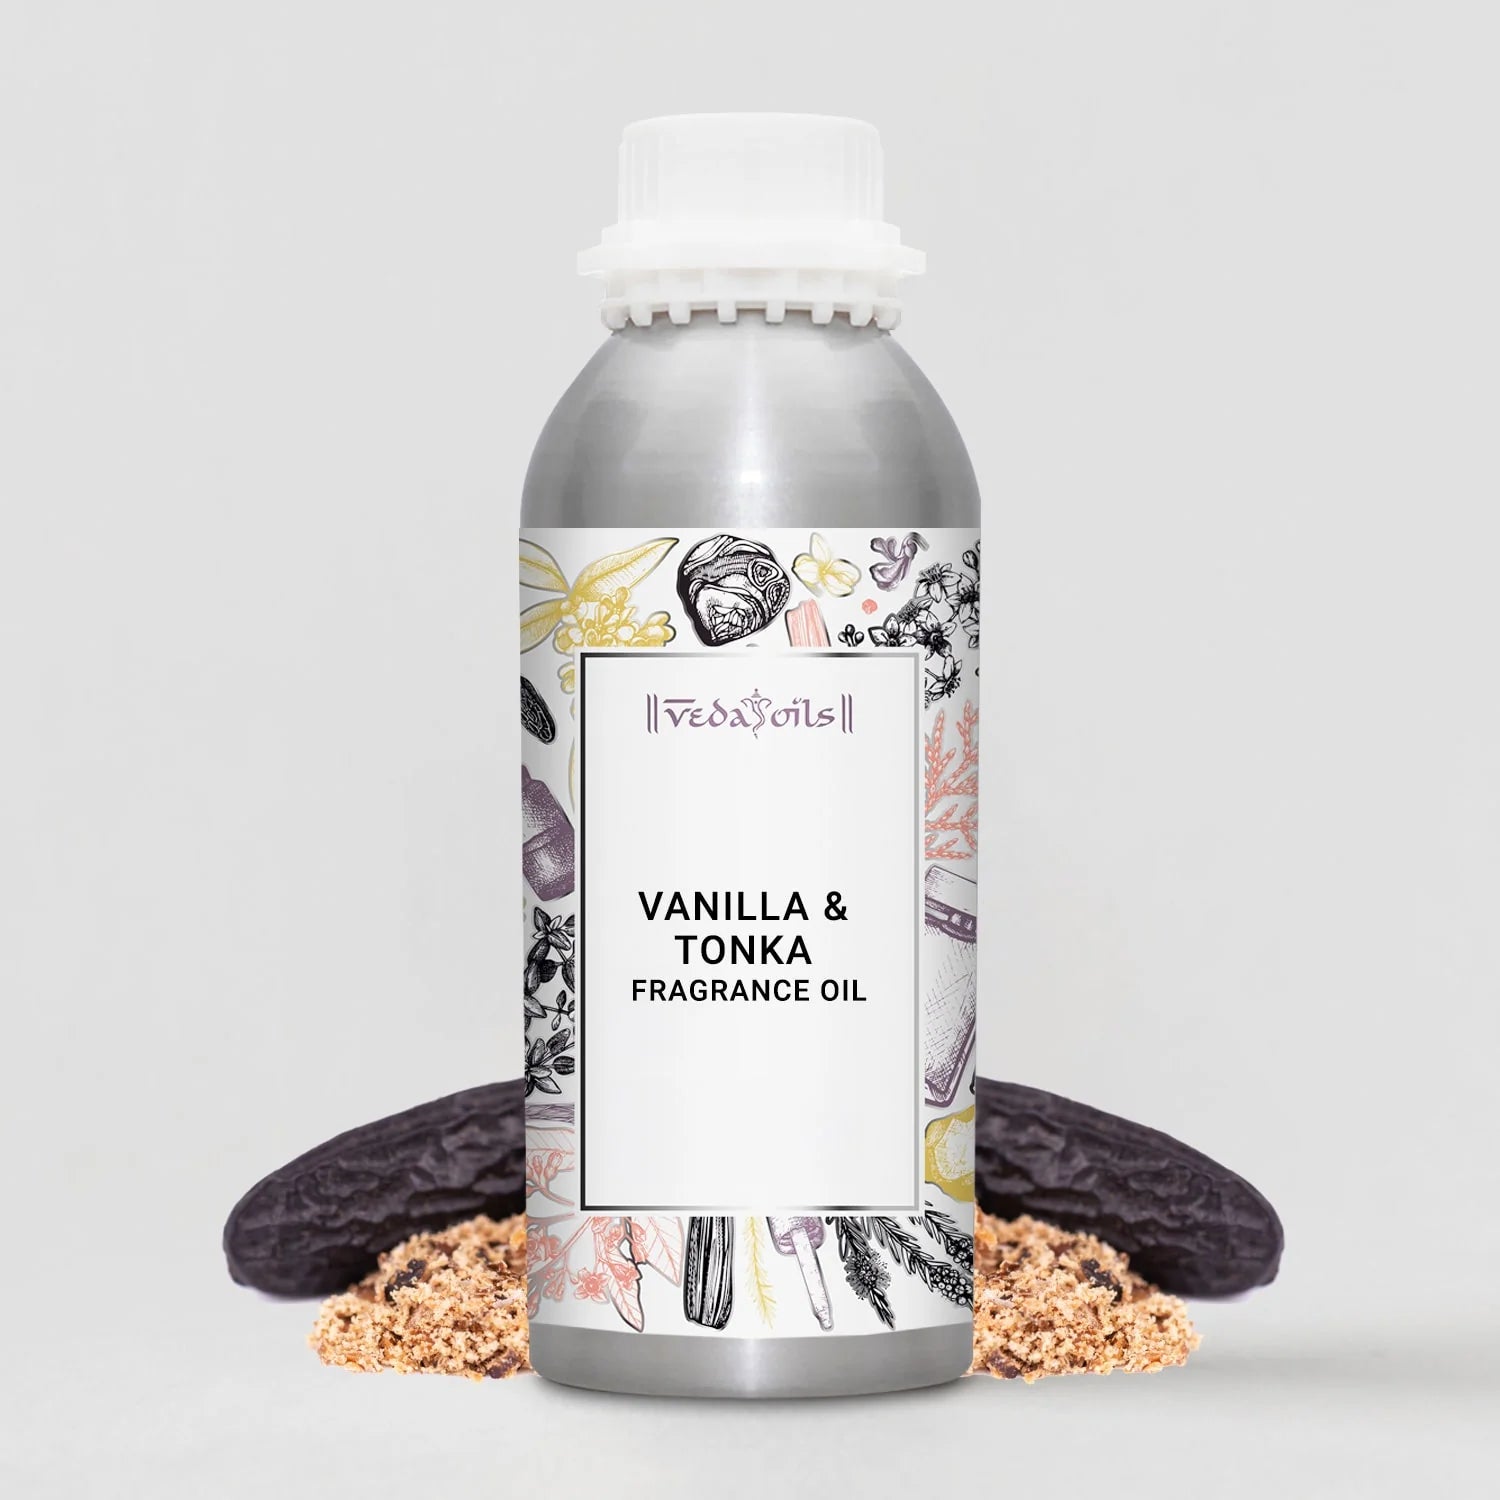 Vanilla & Tonka Fragrance Oil